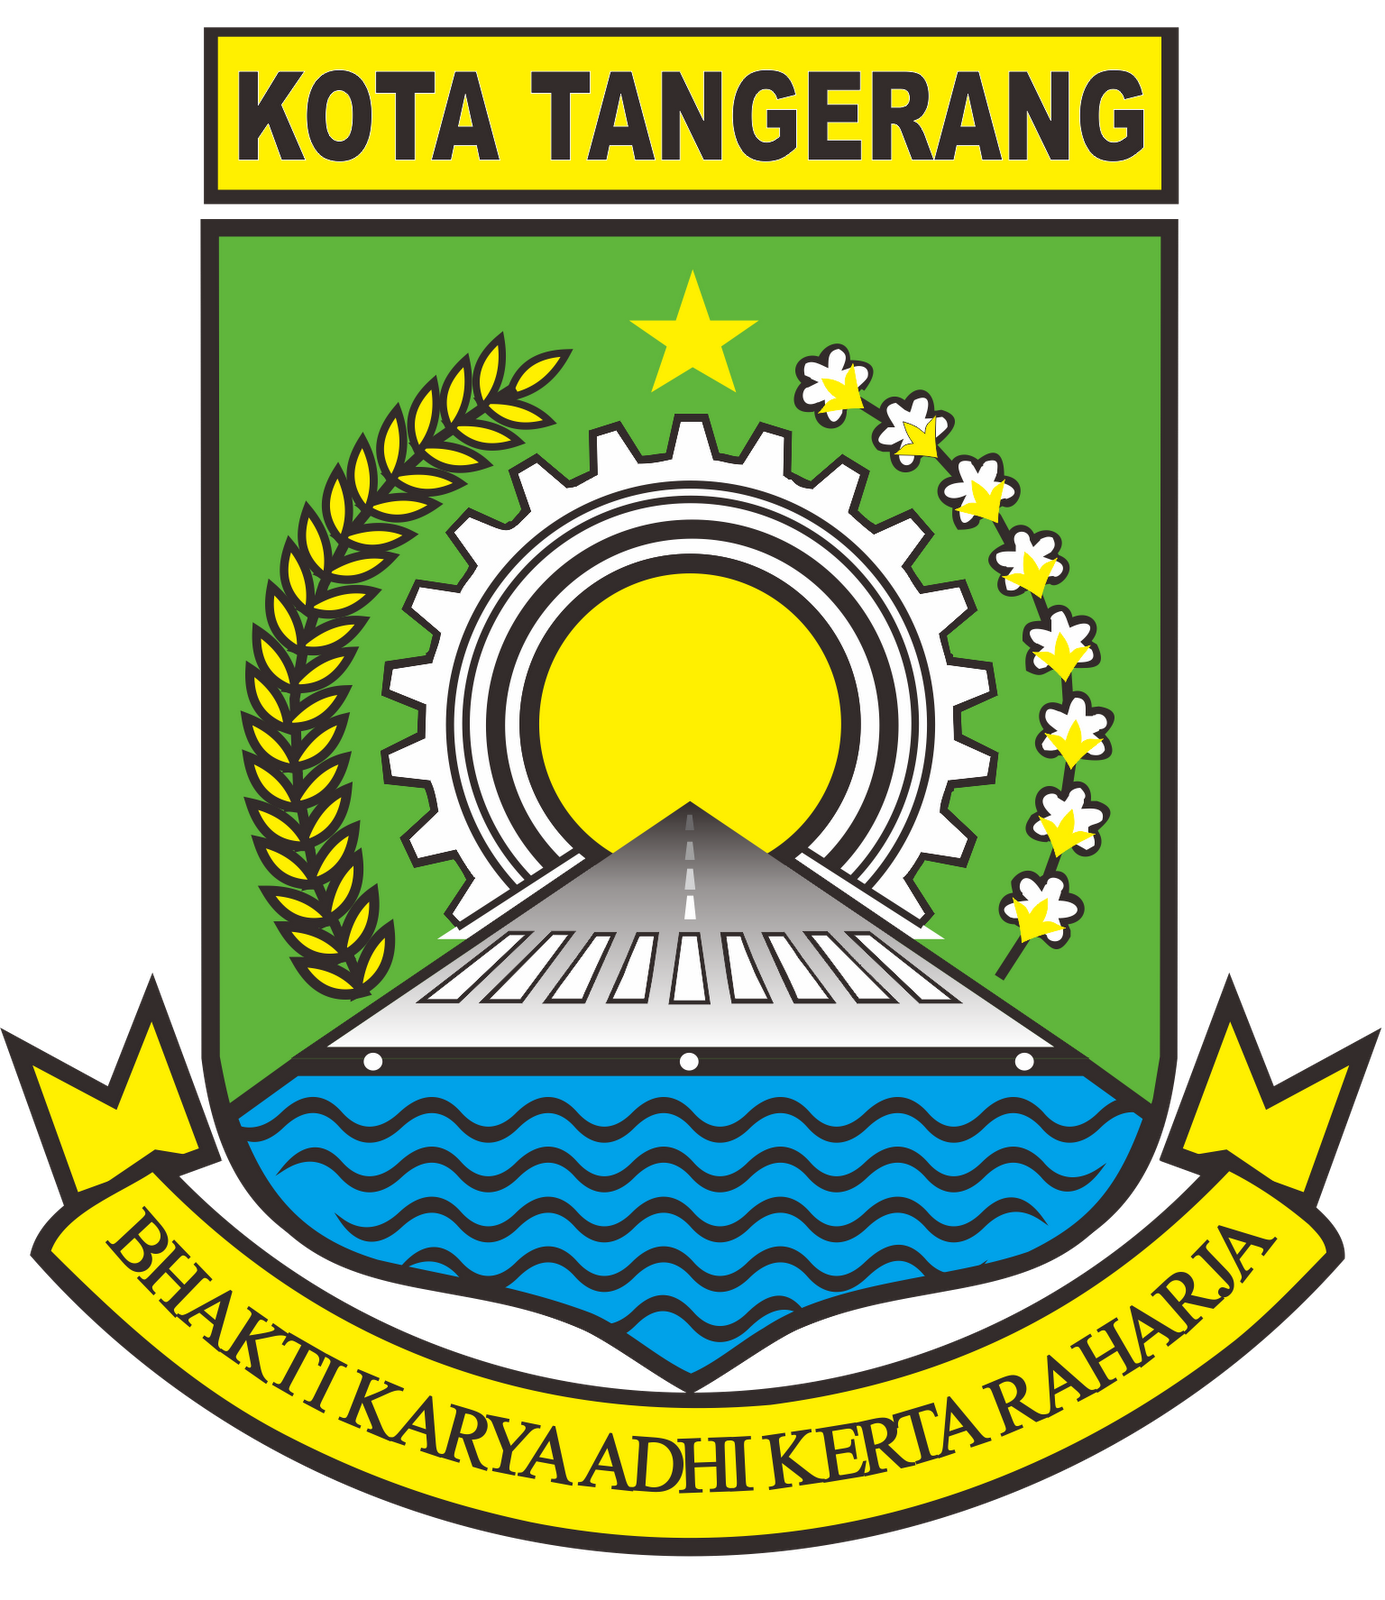  Profil Kota Tangerang  GEOGRAFIS KOTA  TANGERANG 